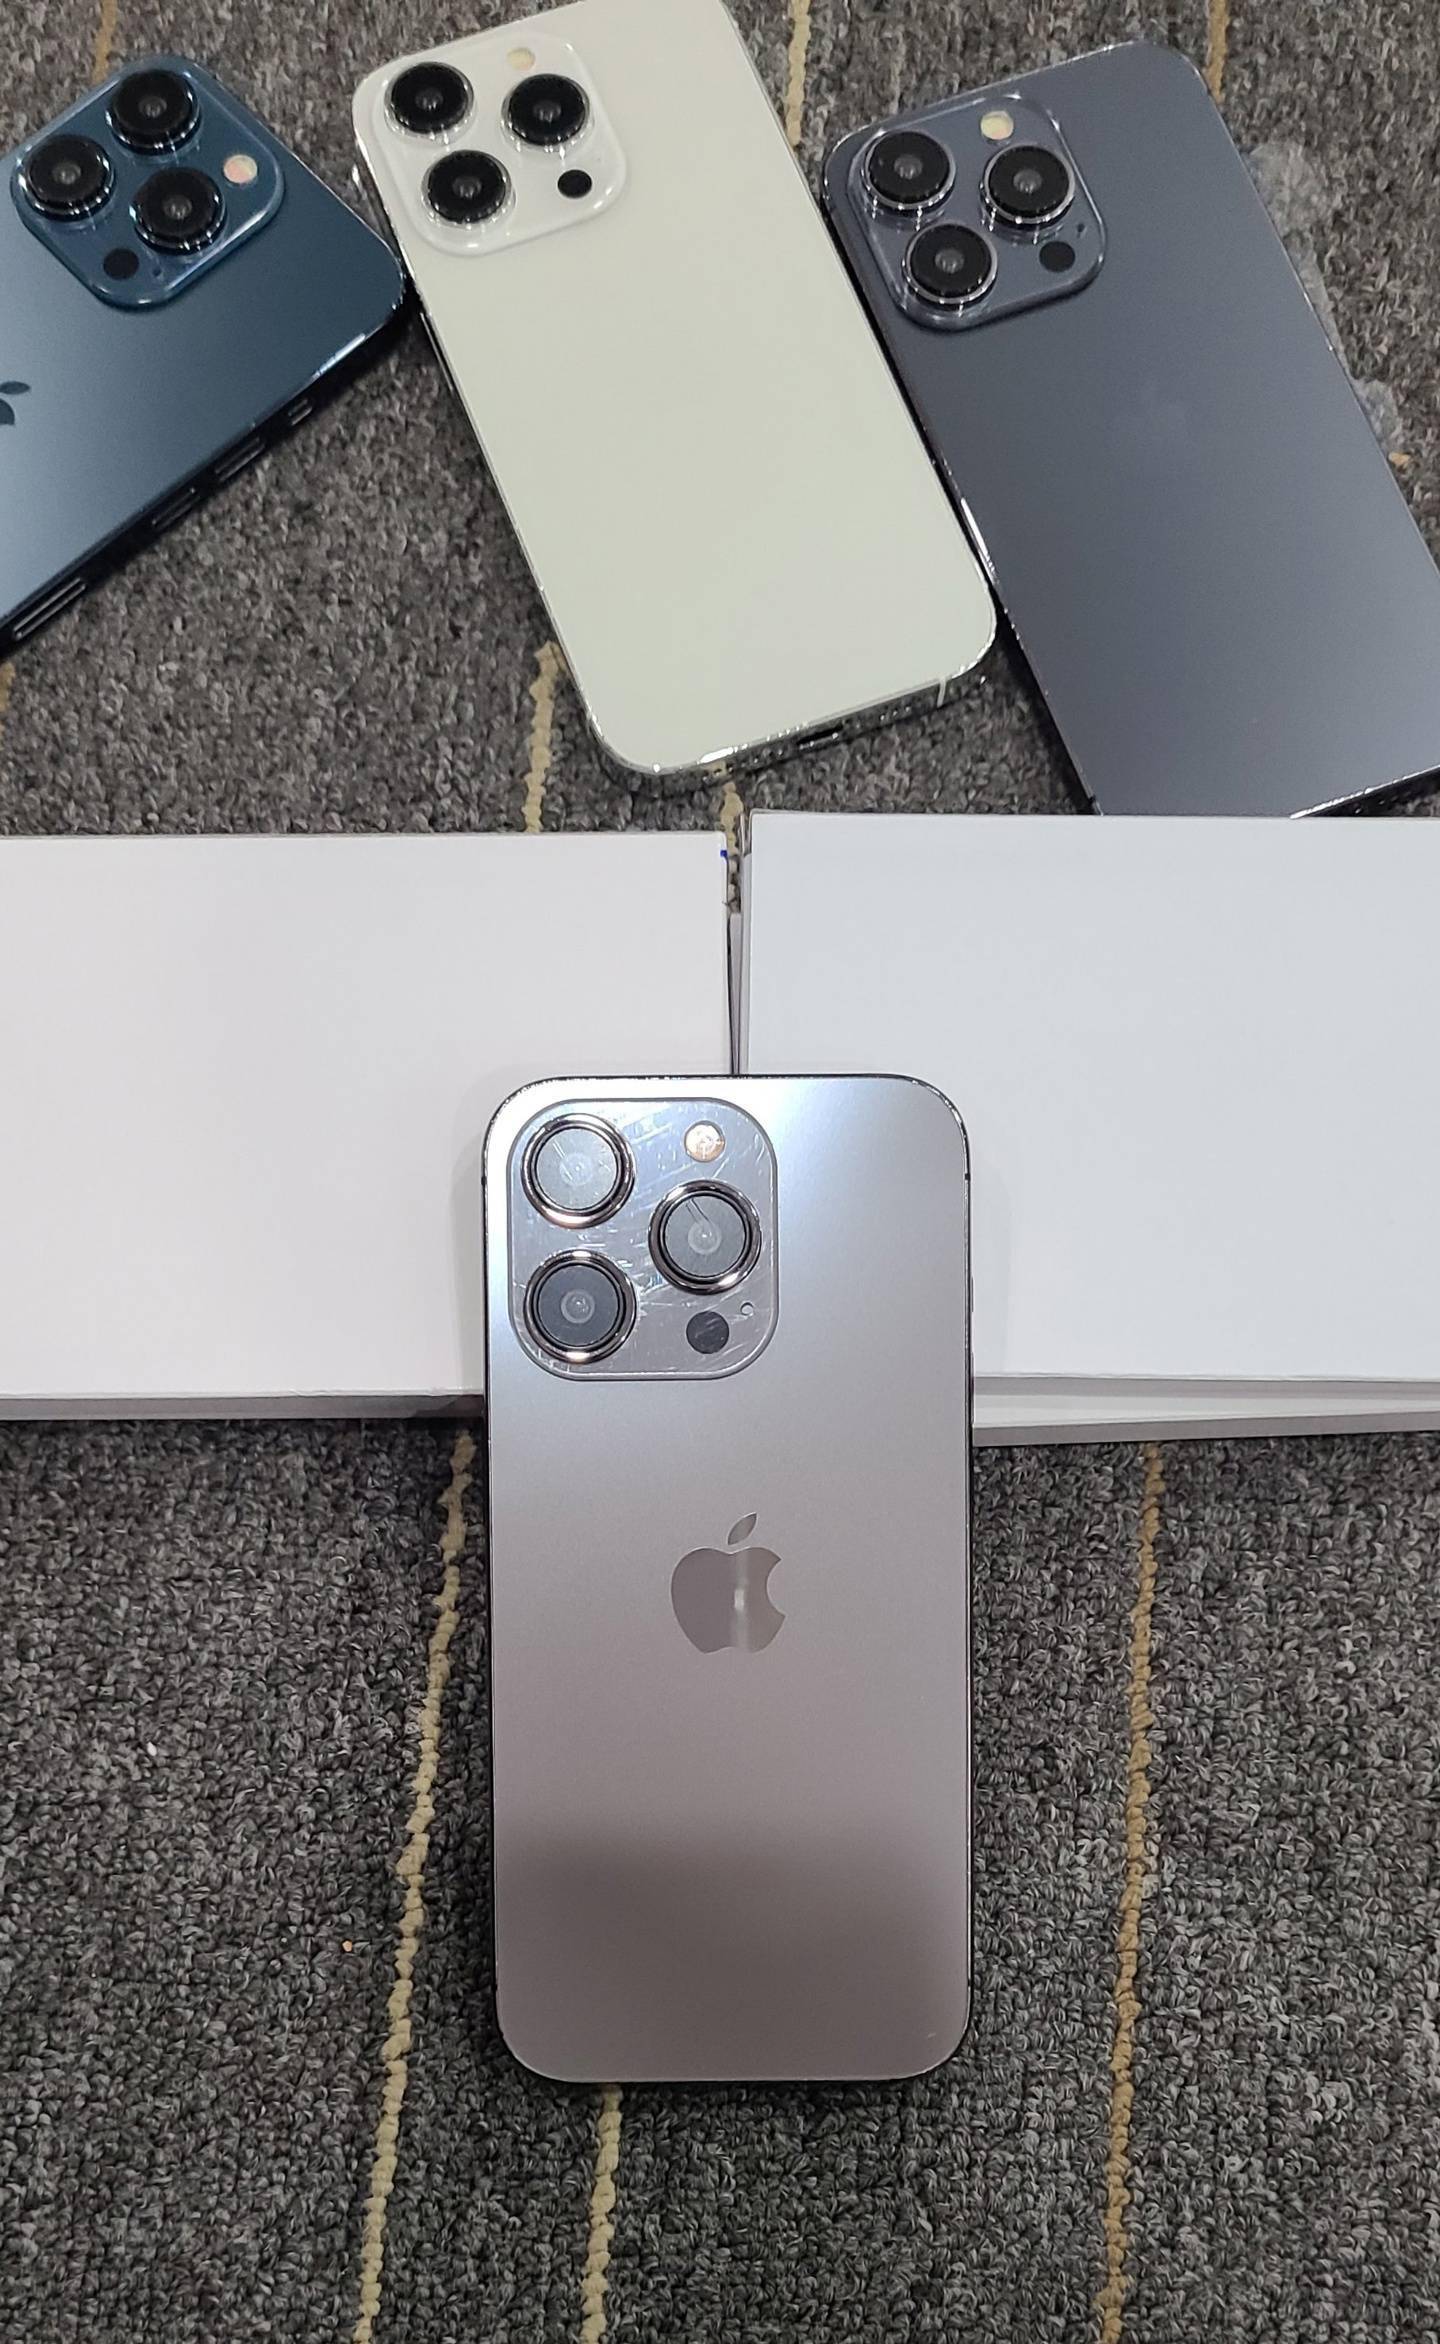 苹果 iPhone 15 和 iPhone 15 Pro 机模展示 新机颜色外观曝光图片 第3张